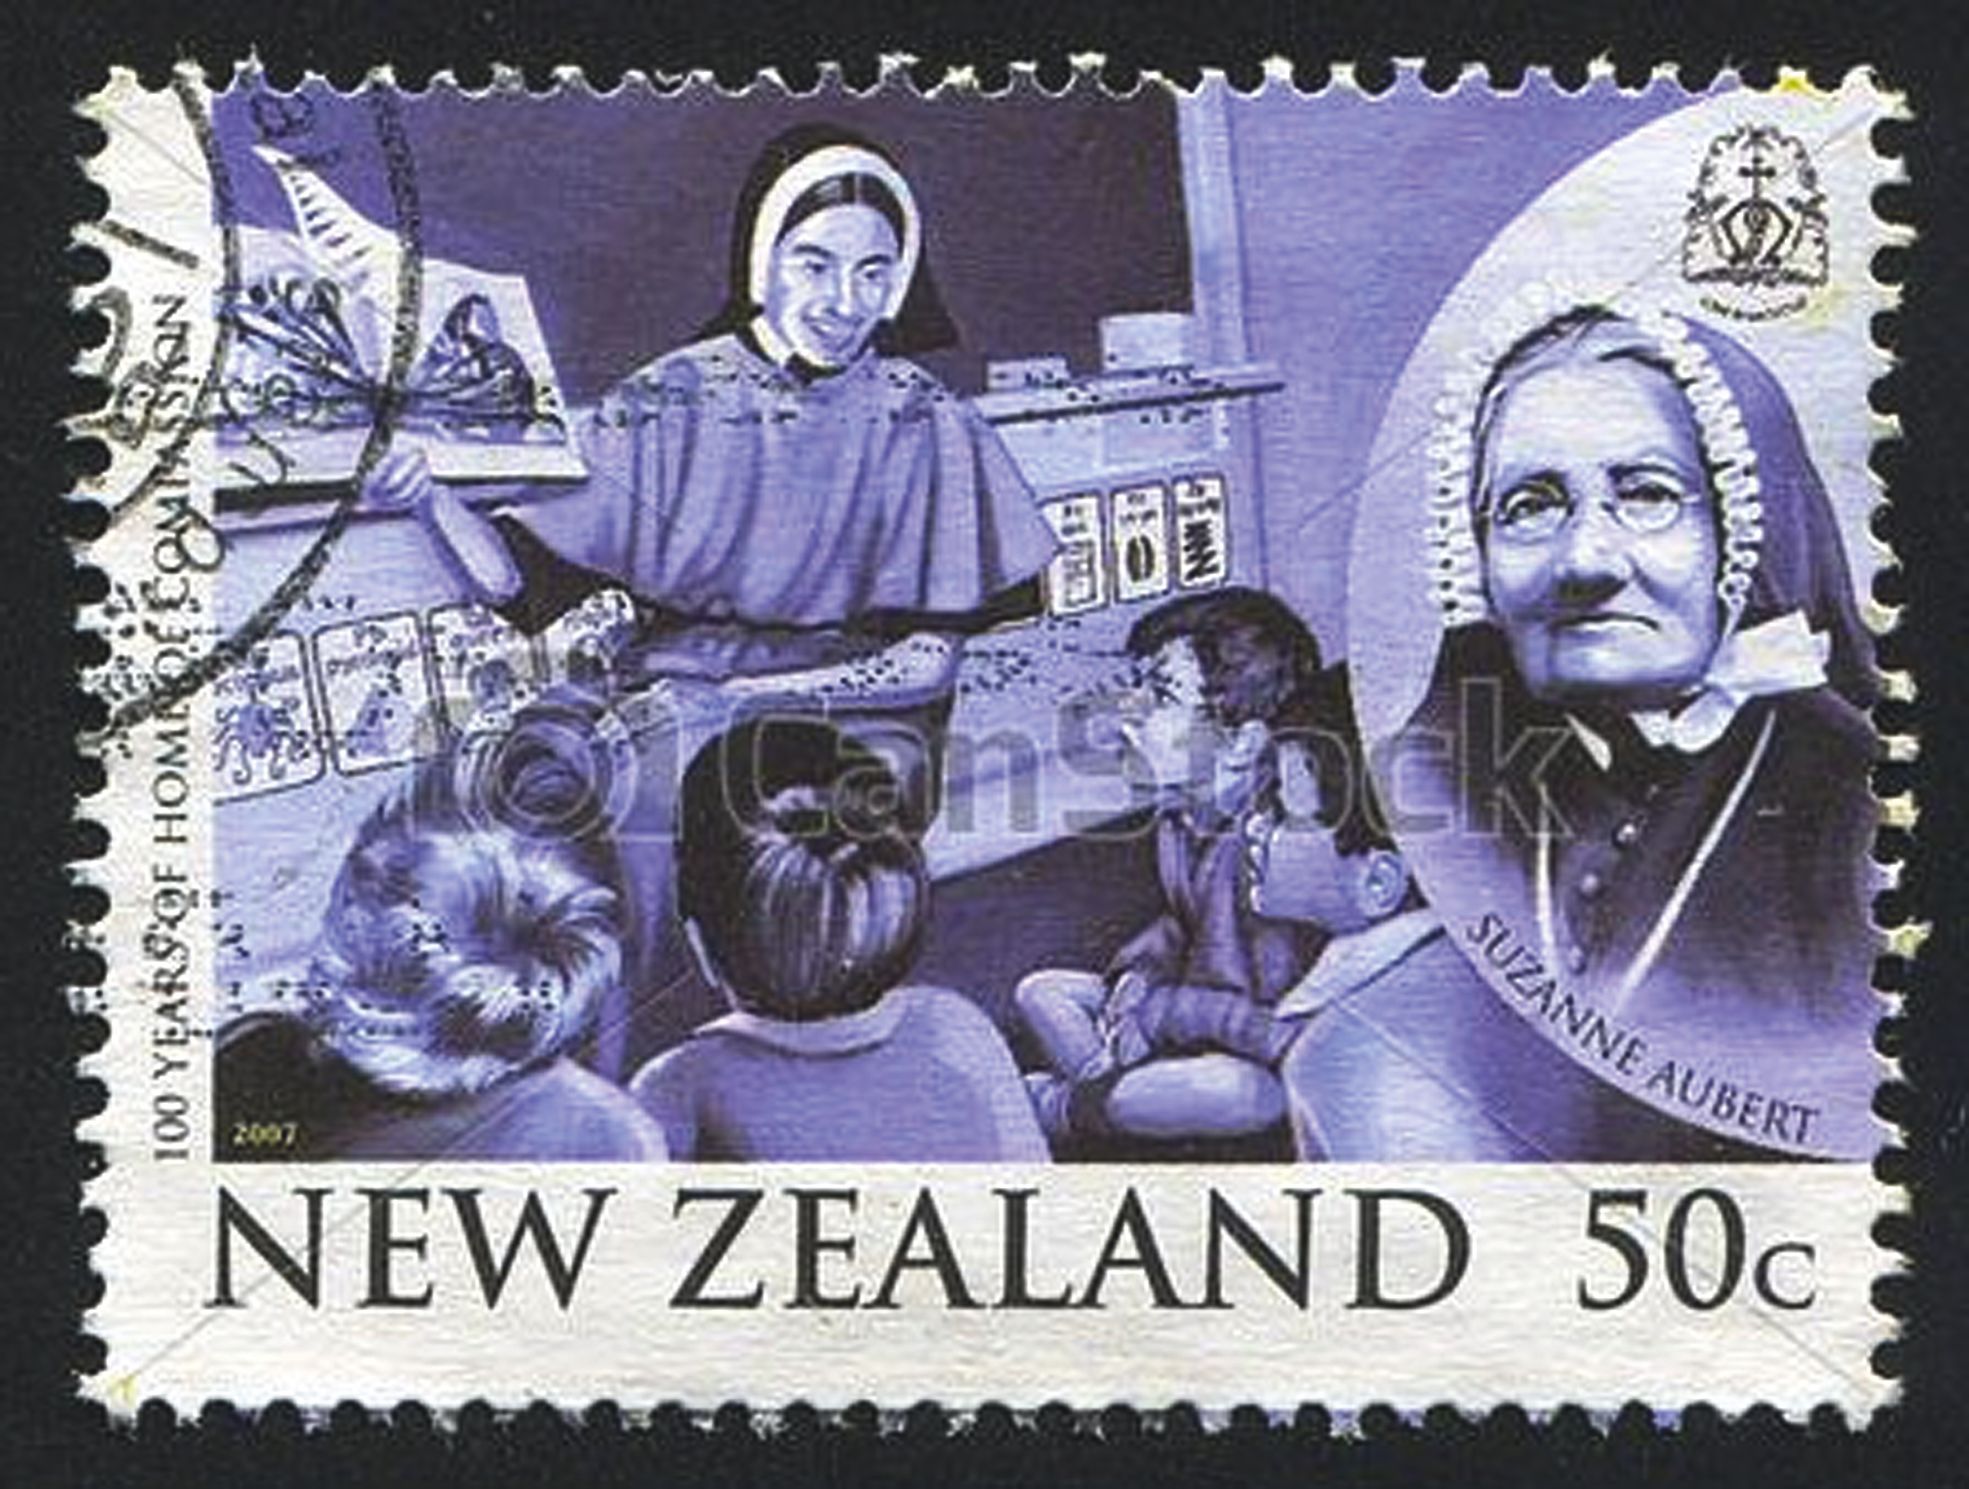 La Nouvelle-Zélande  a fait de  la petite Lyonnaise une héroïne de son  histoire, comme en témoigne ce timbre.